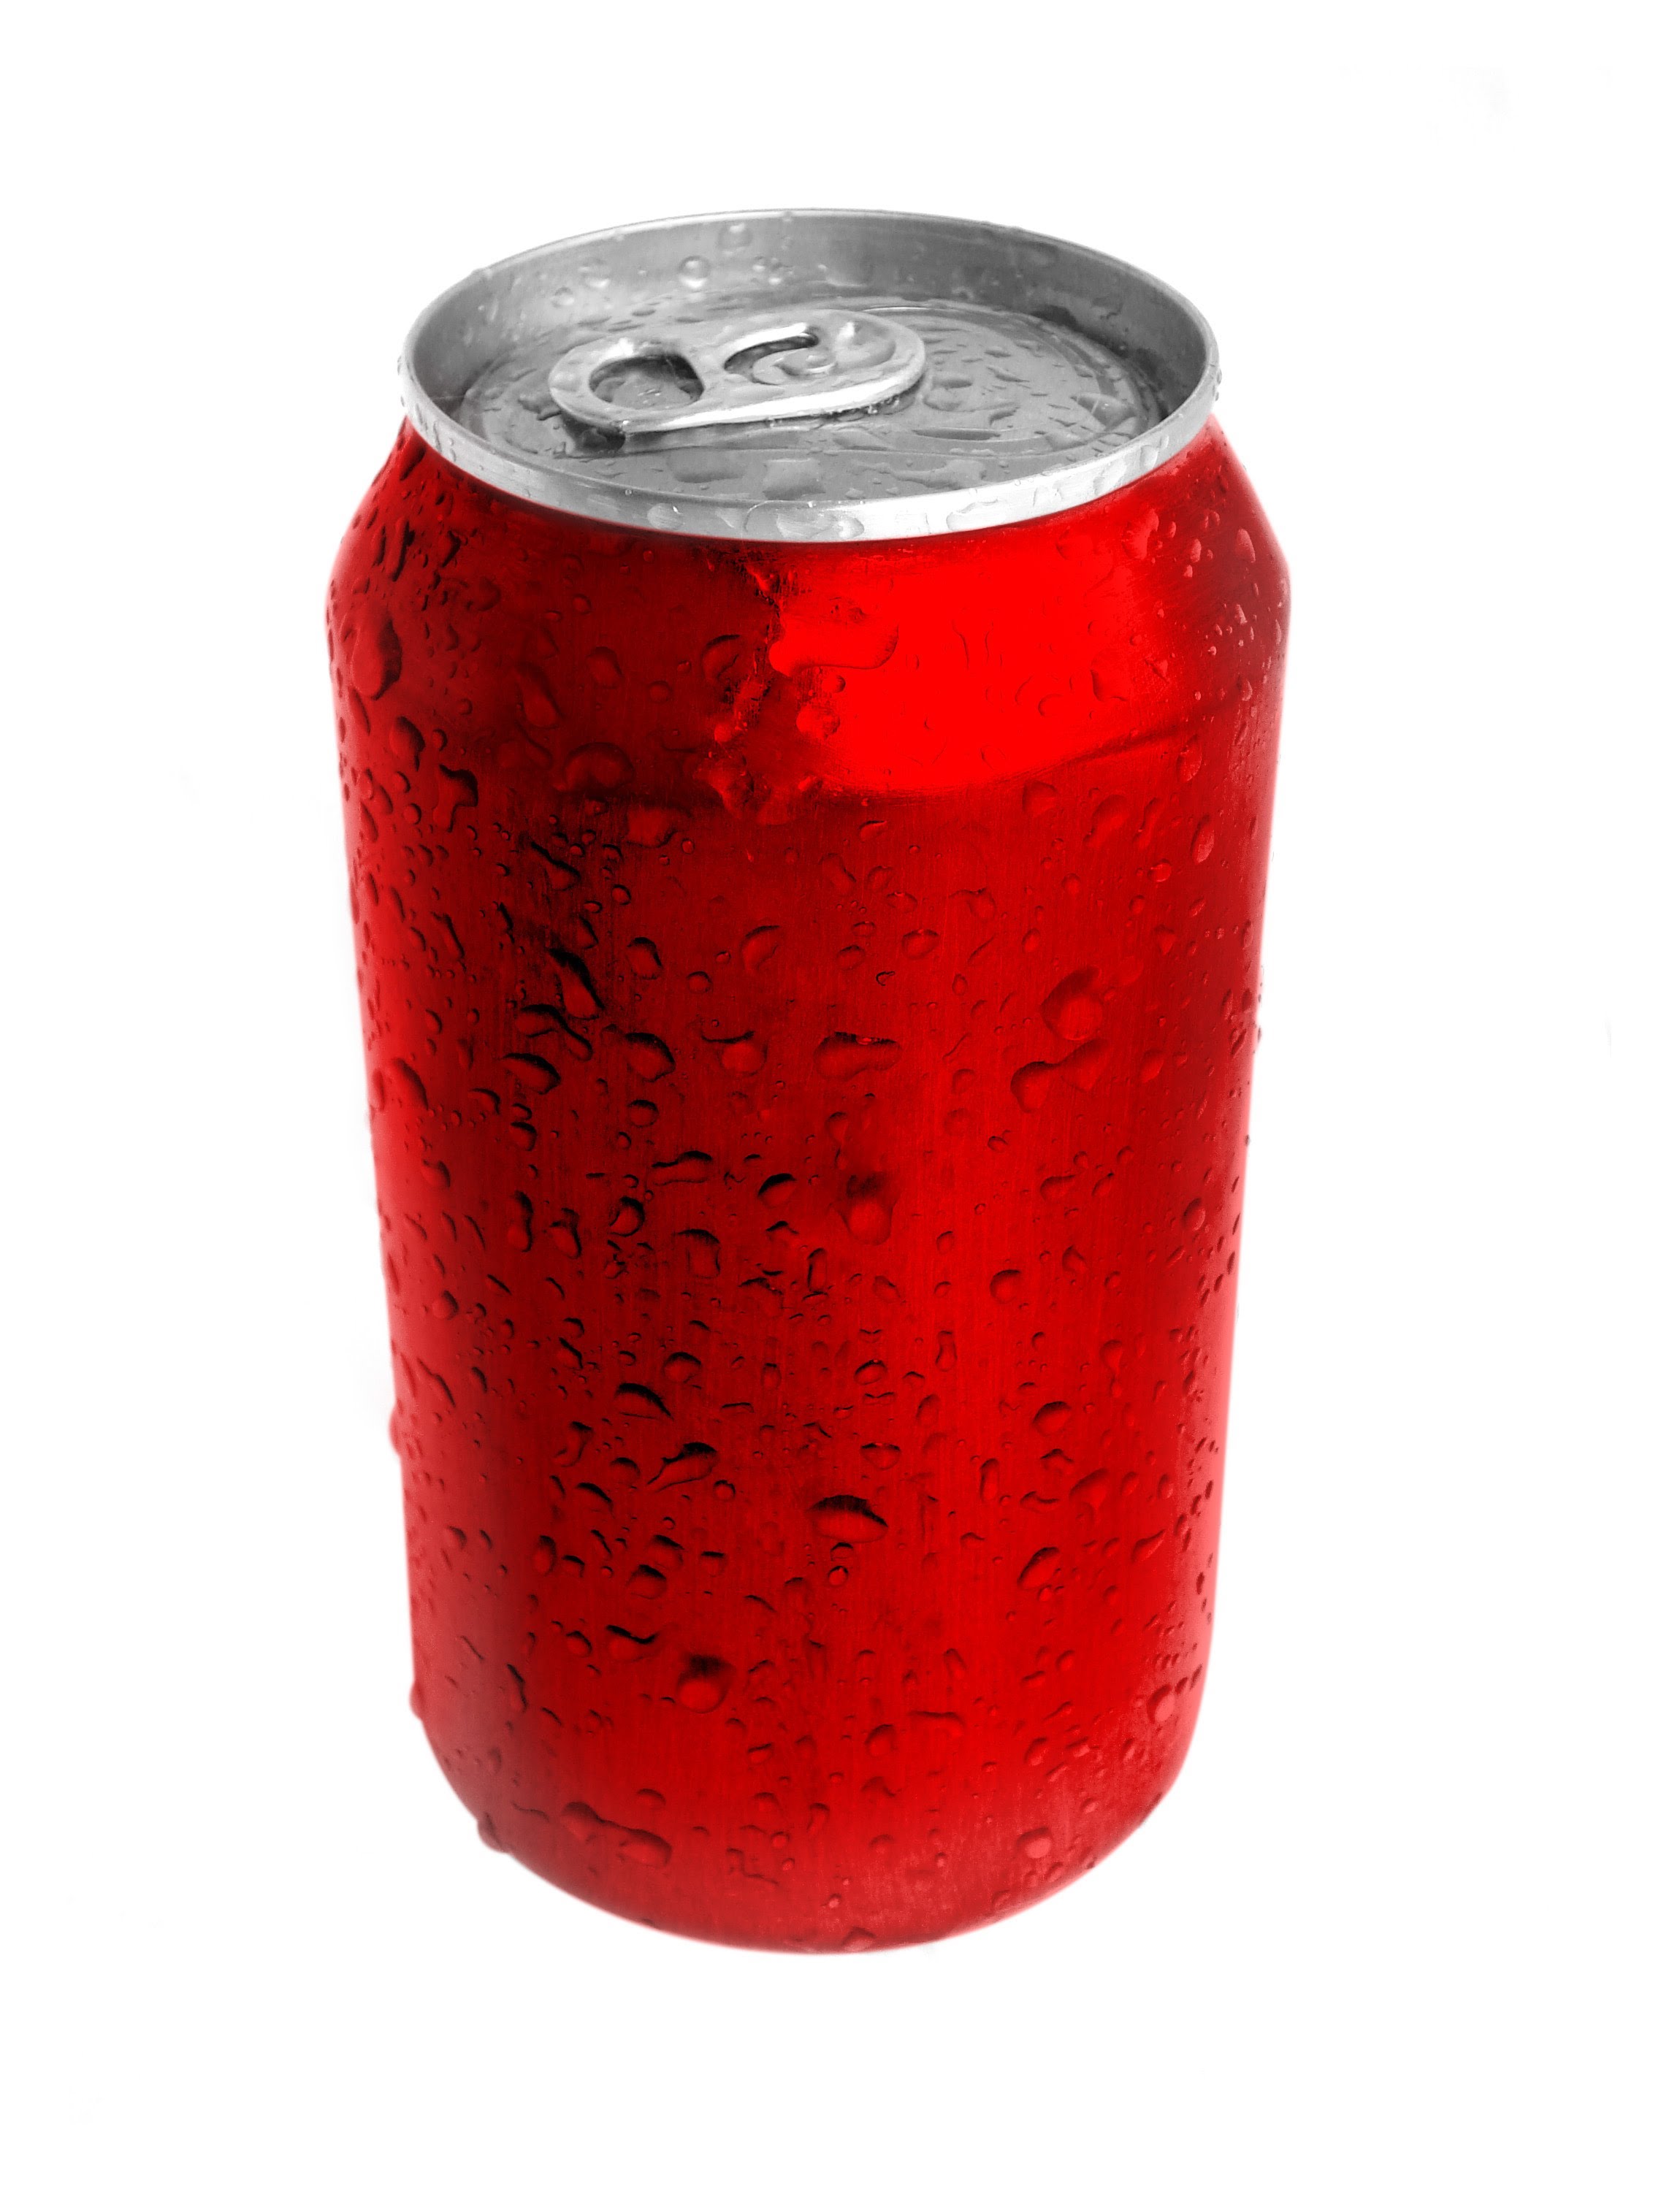 Coca Cola clipart soda bottle